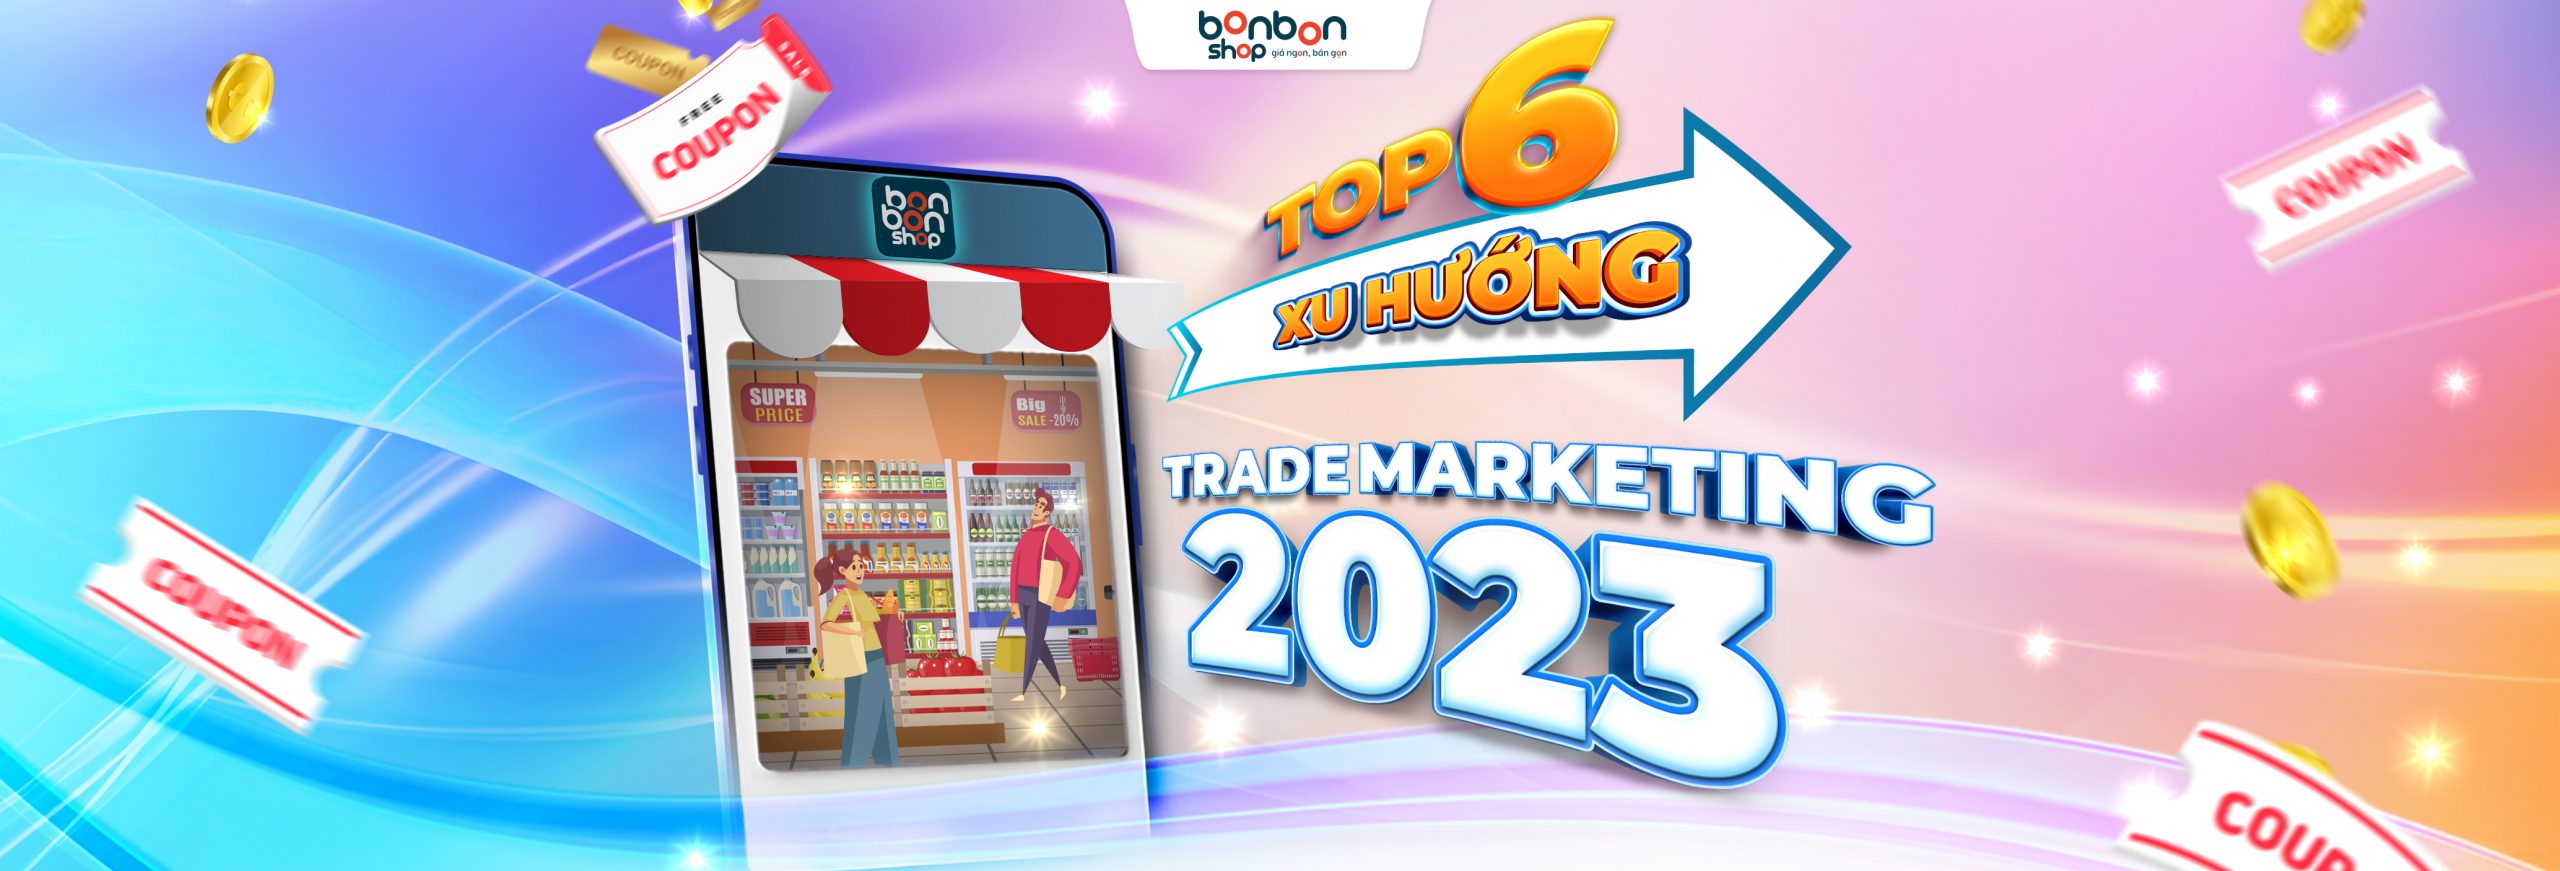 xu-huong-trade-marketing-2023